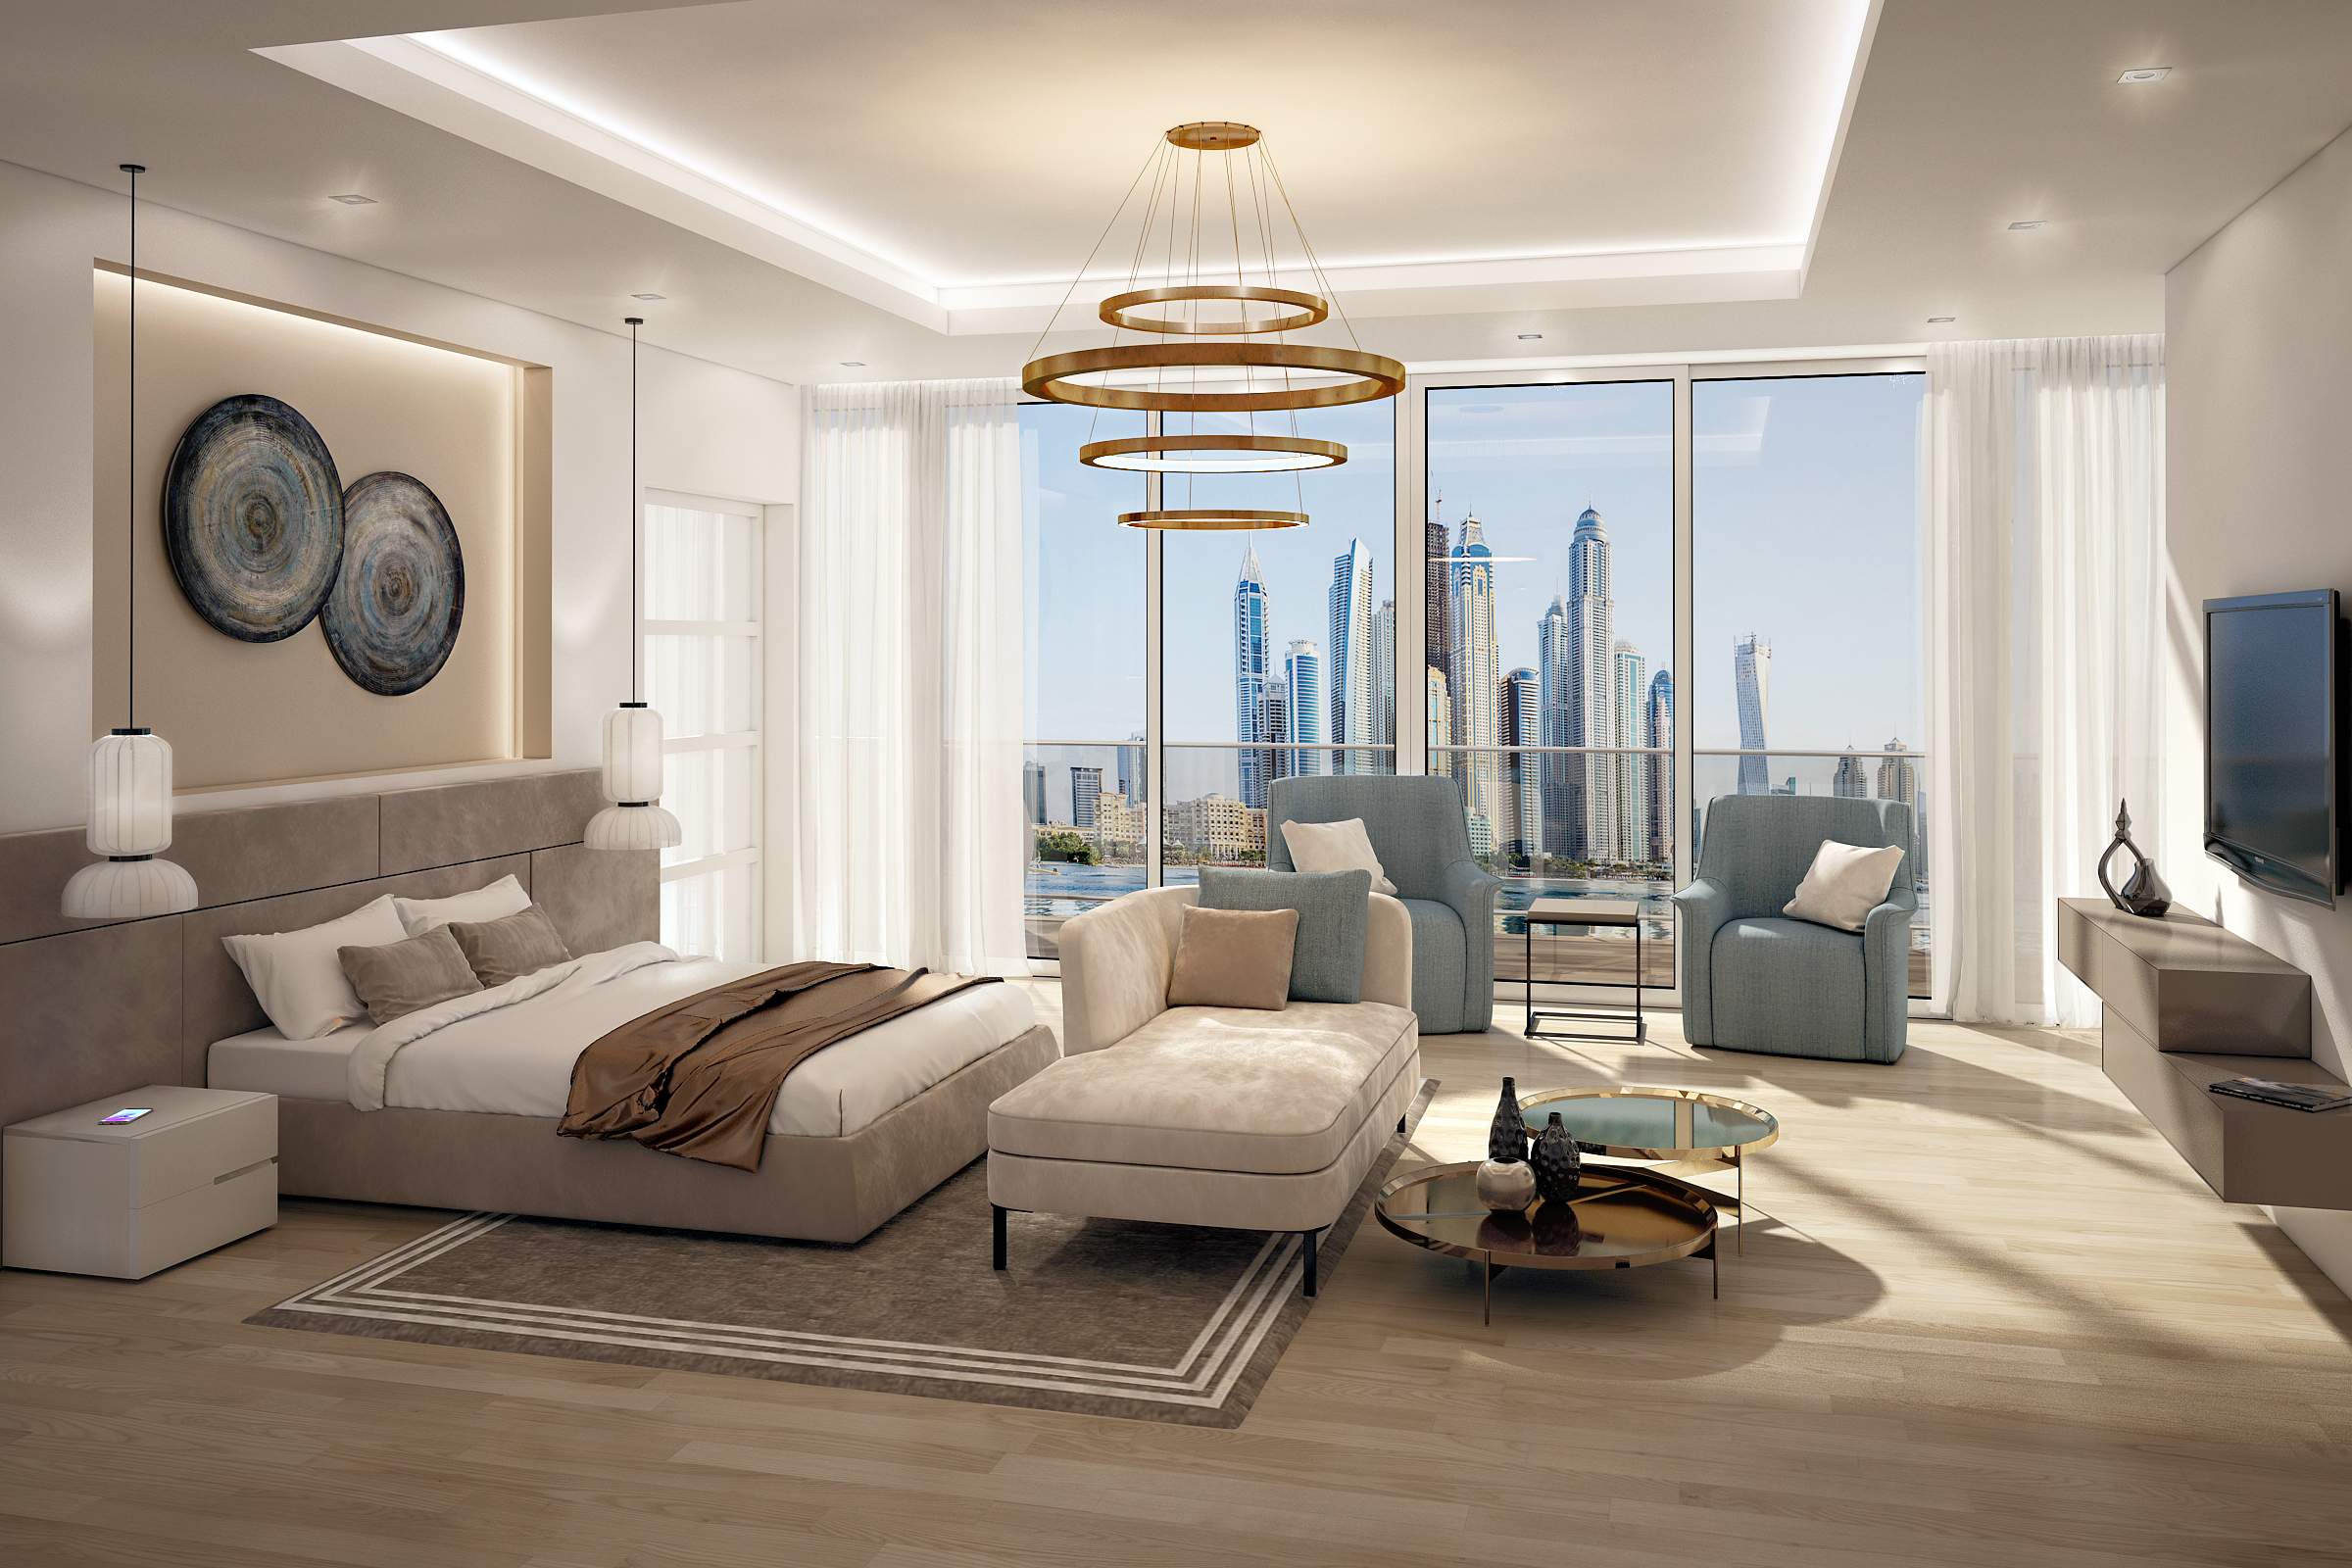 moder luxury design bedroom pianca